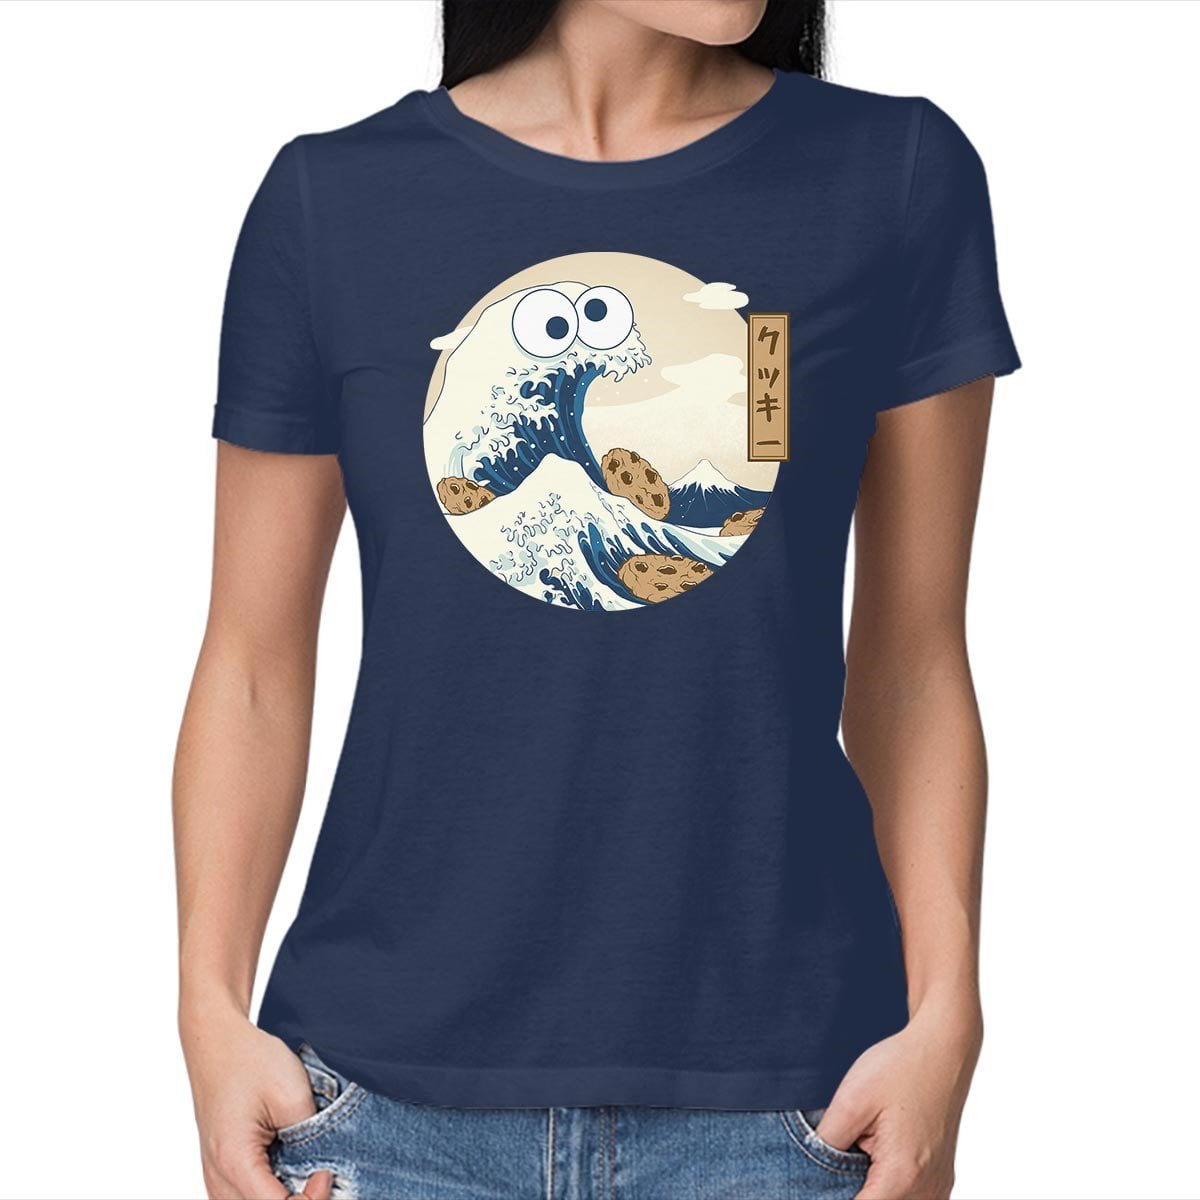 Cookie Monster Shirt Women 